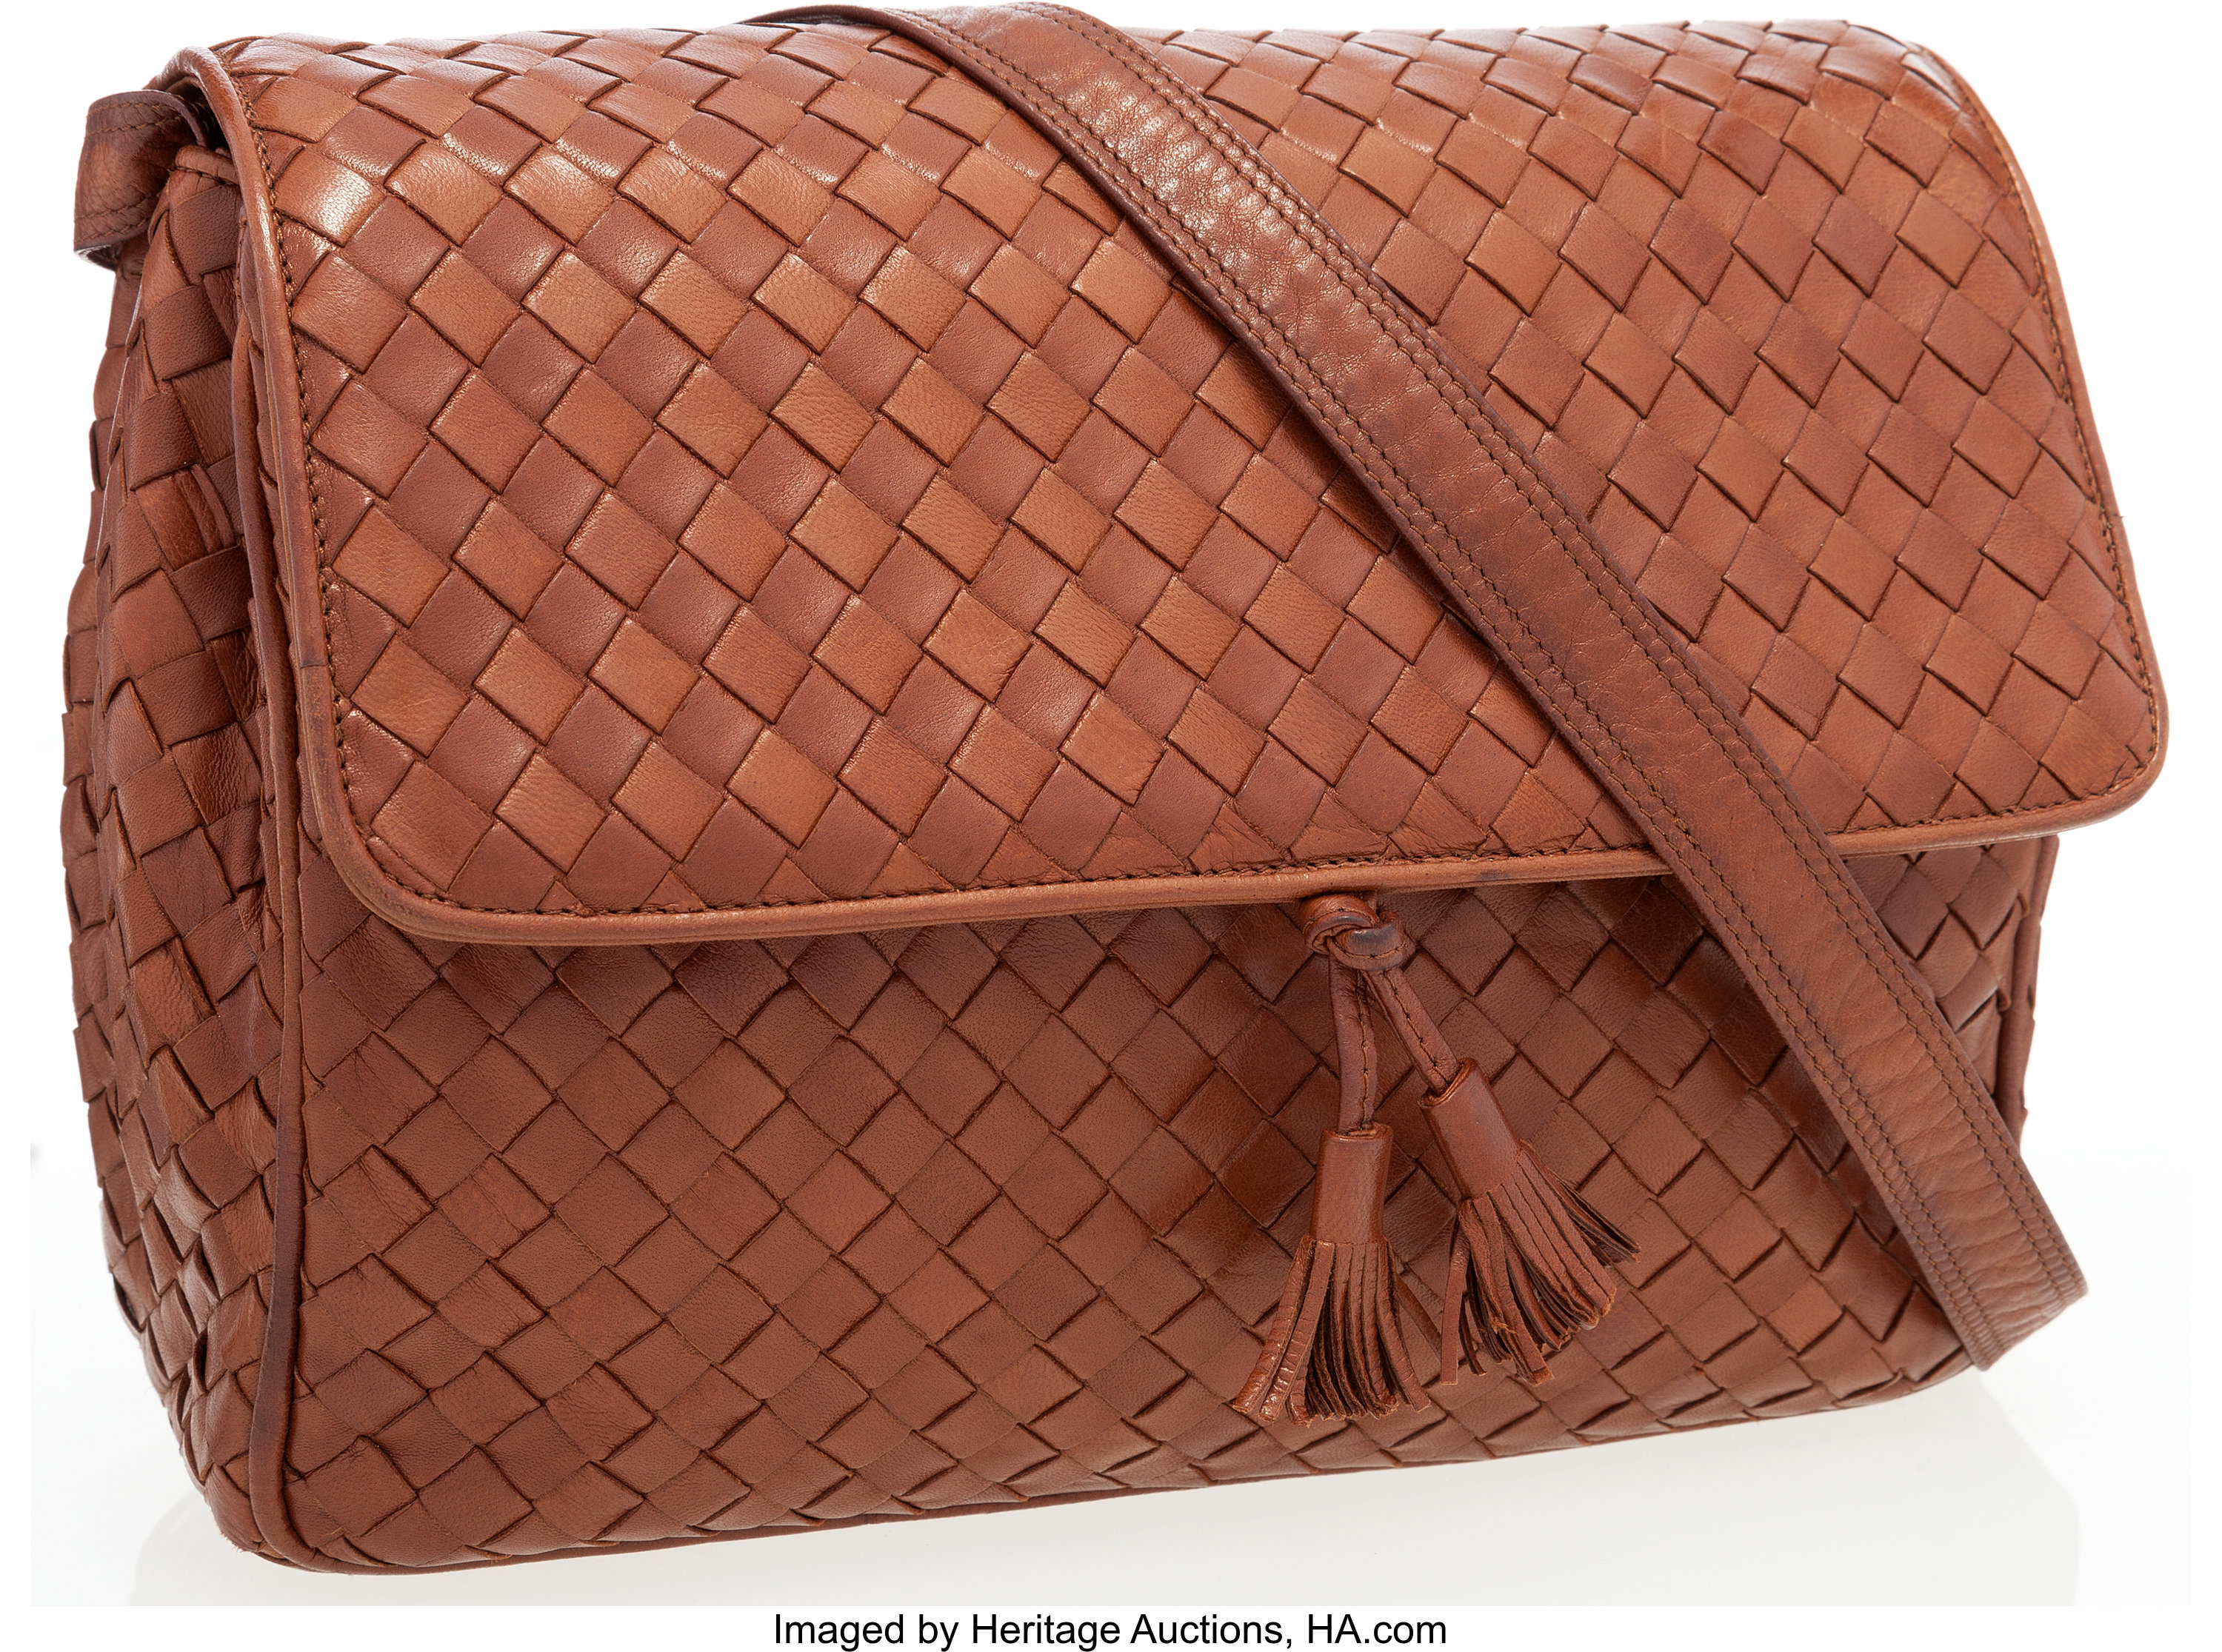 Intrecciato Leather Crossbody Bag in Brown - Bottega Veneta